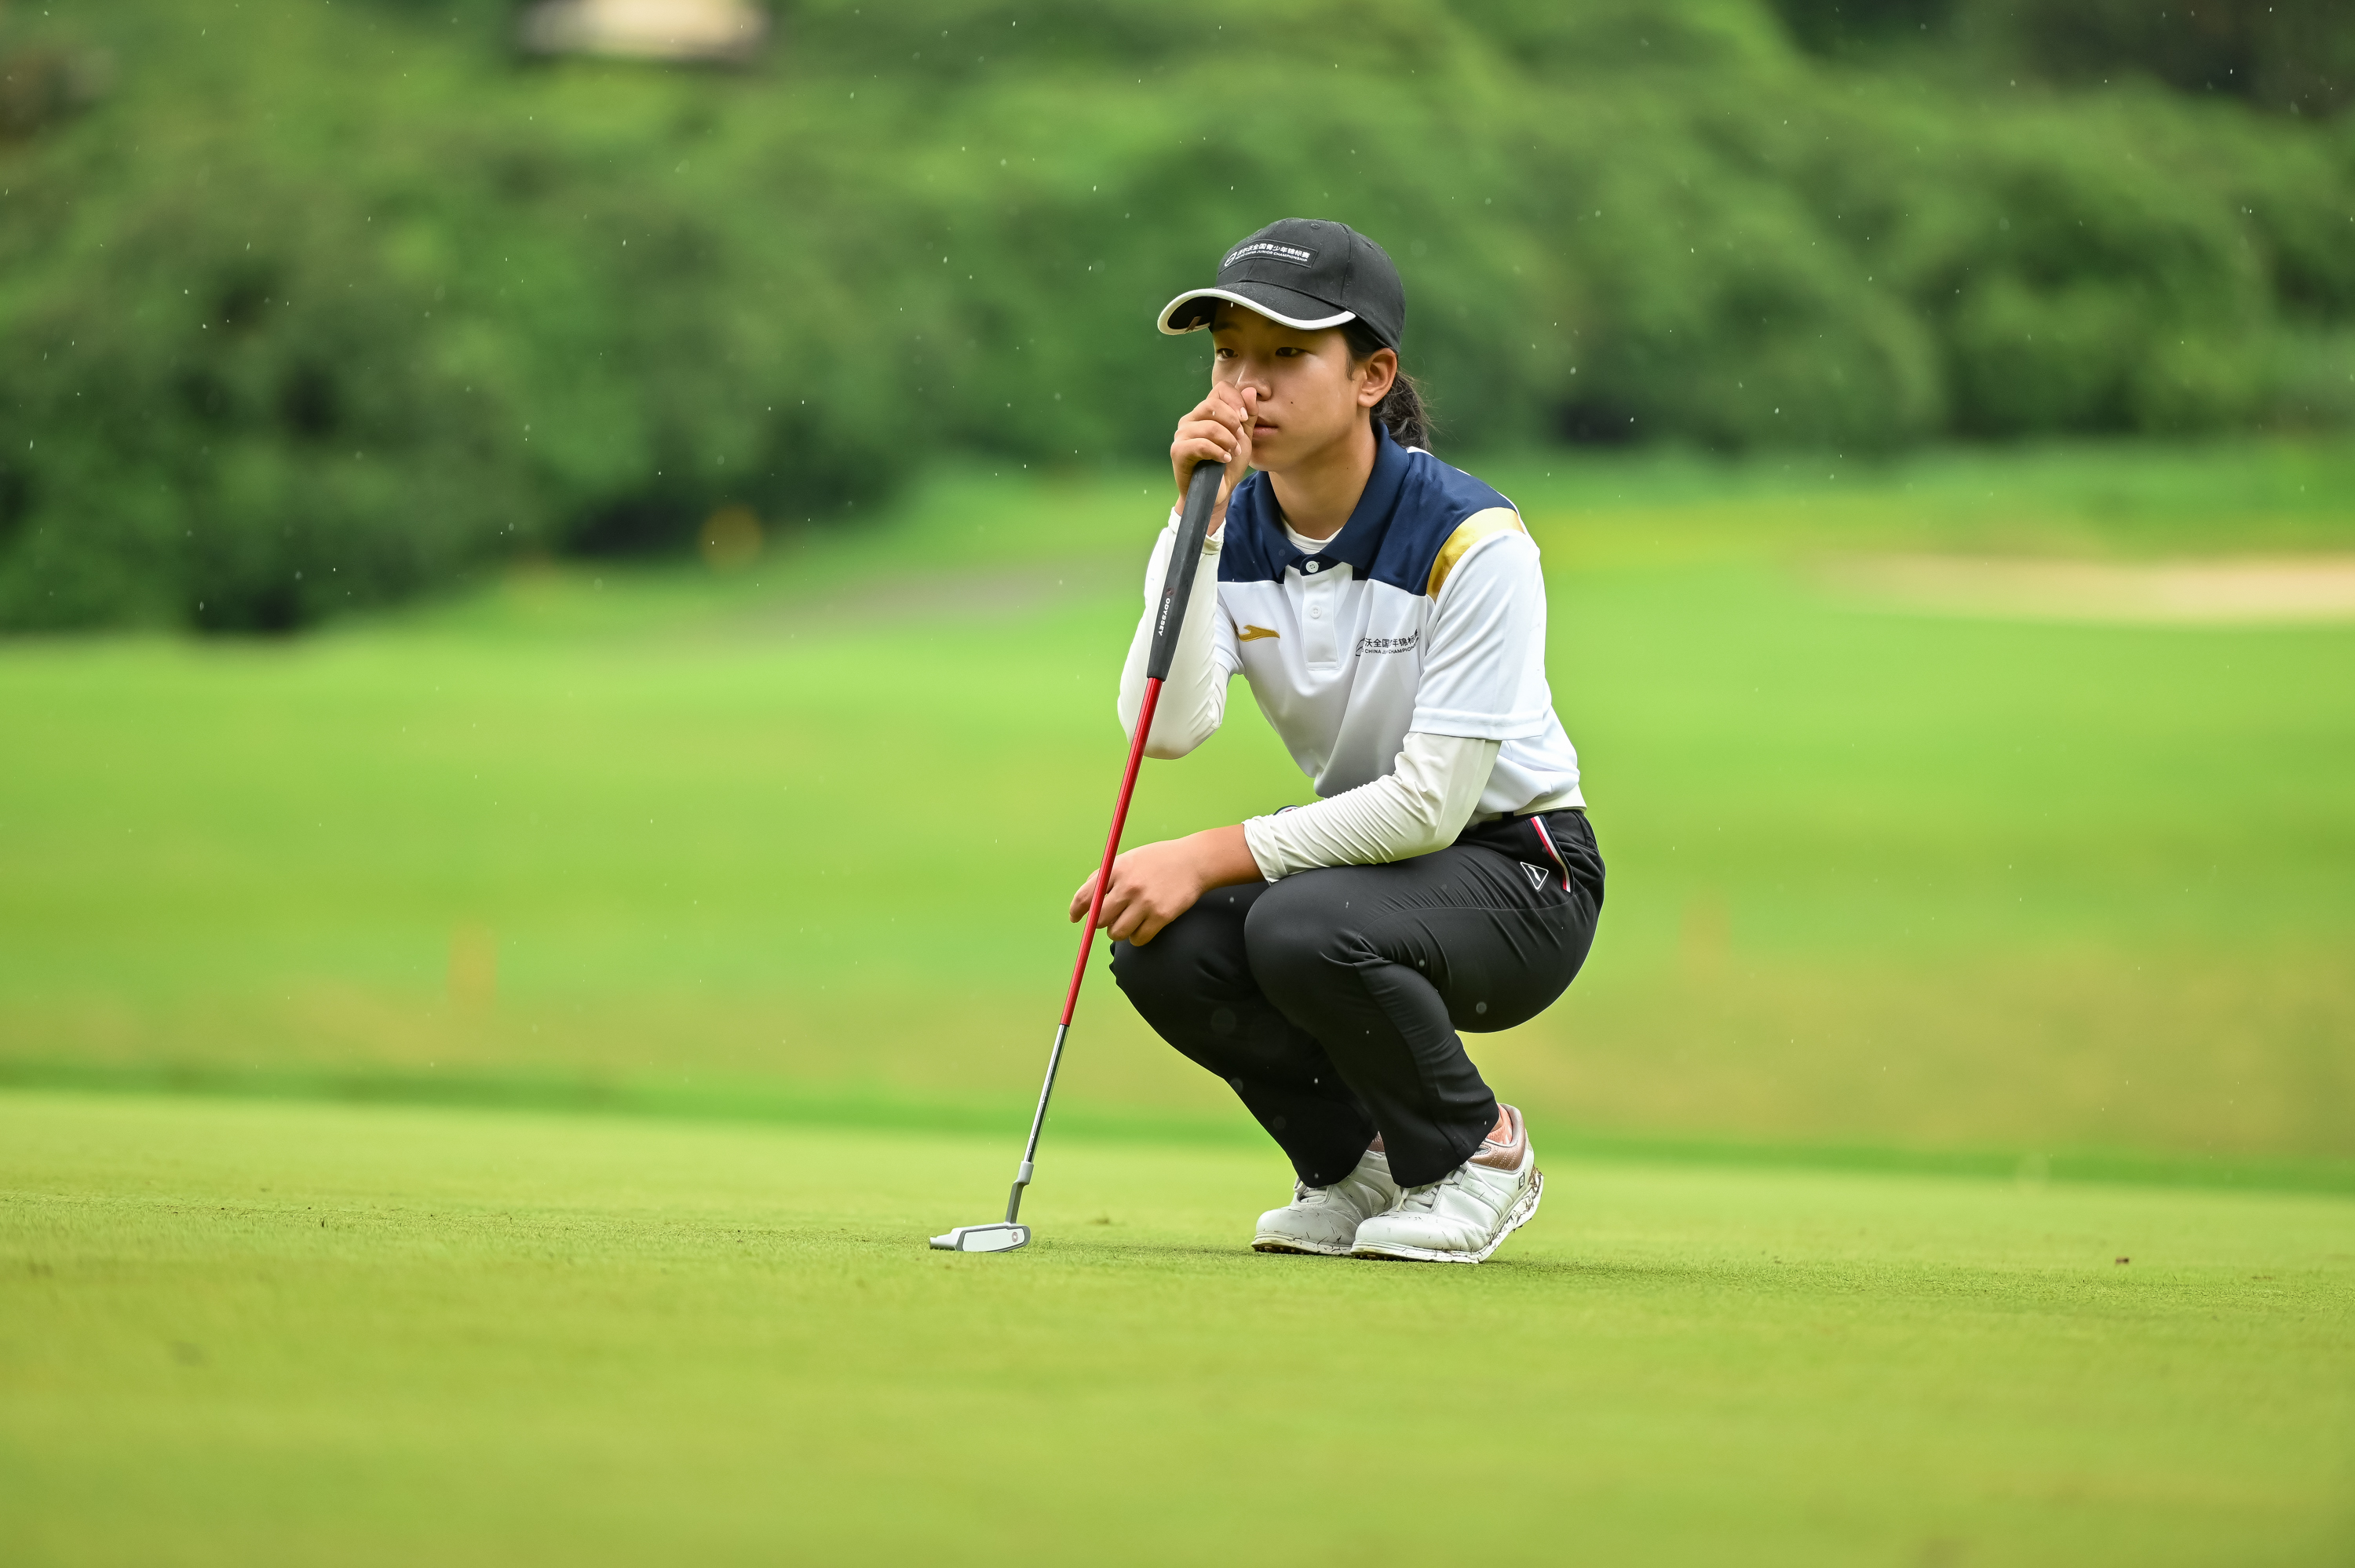 冠军风采!刘国梁女儿刘宇婕夺得全国青少年高尔夫球挑战赛冠军